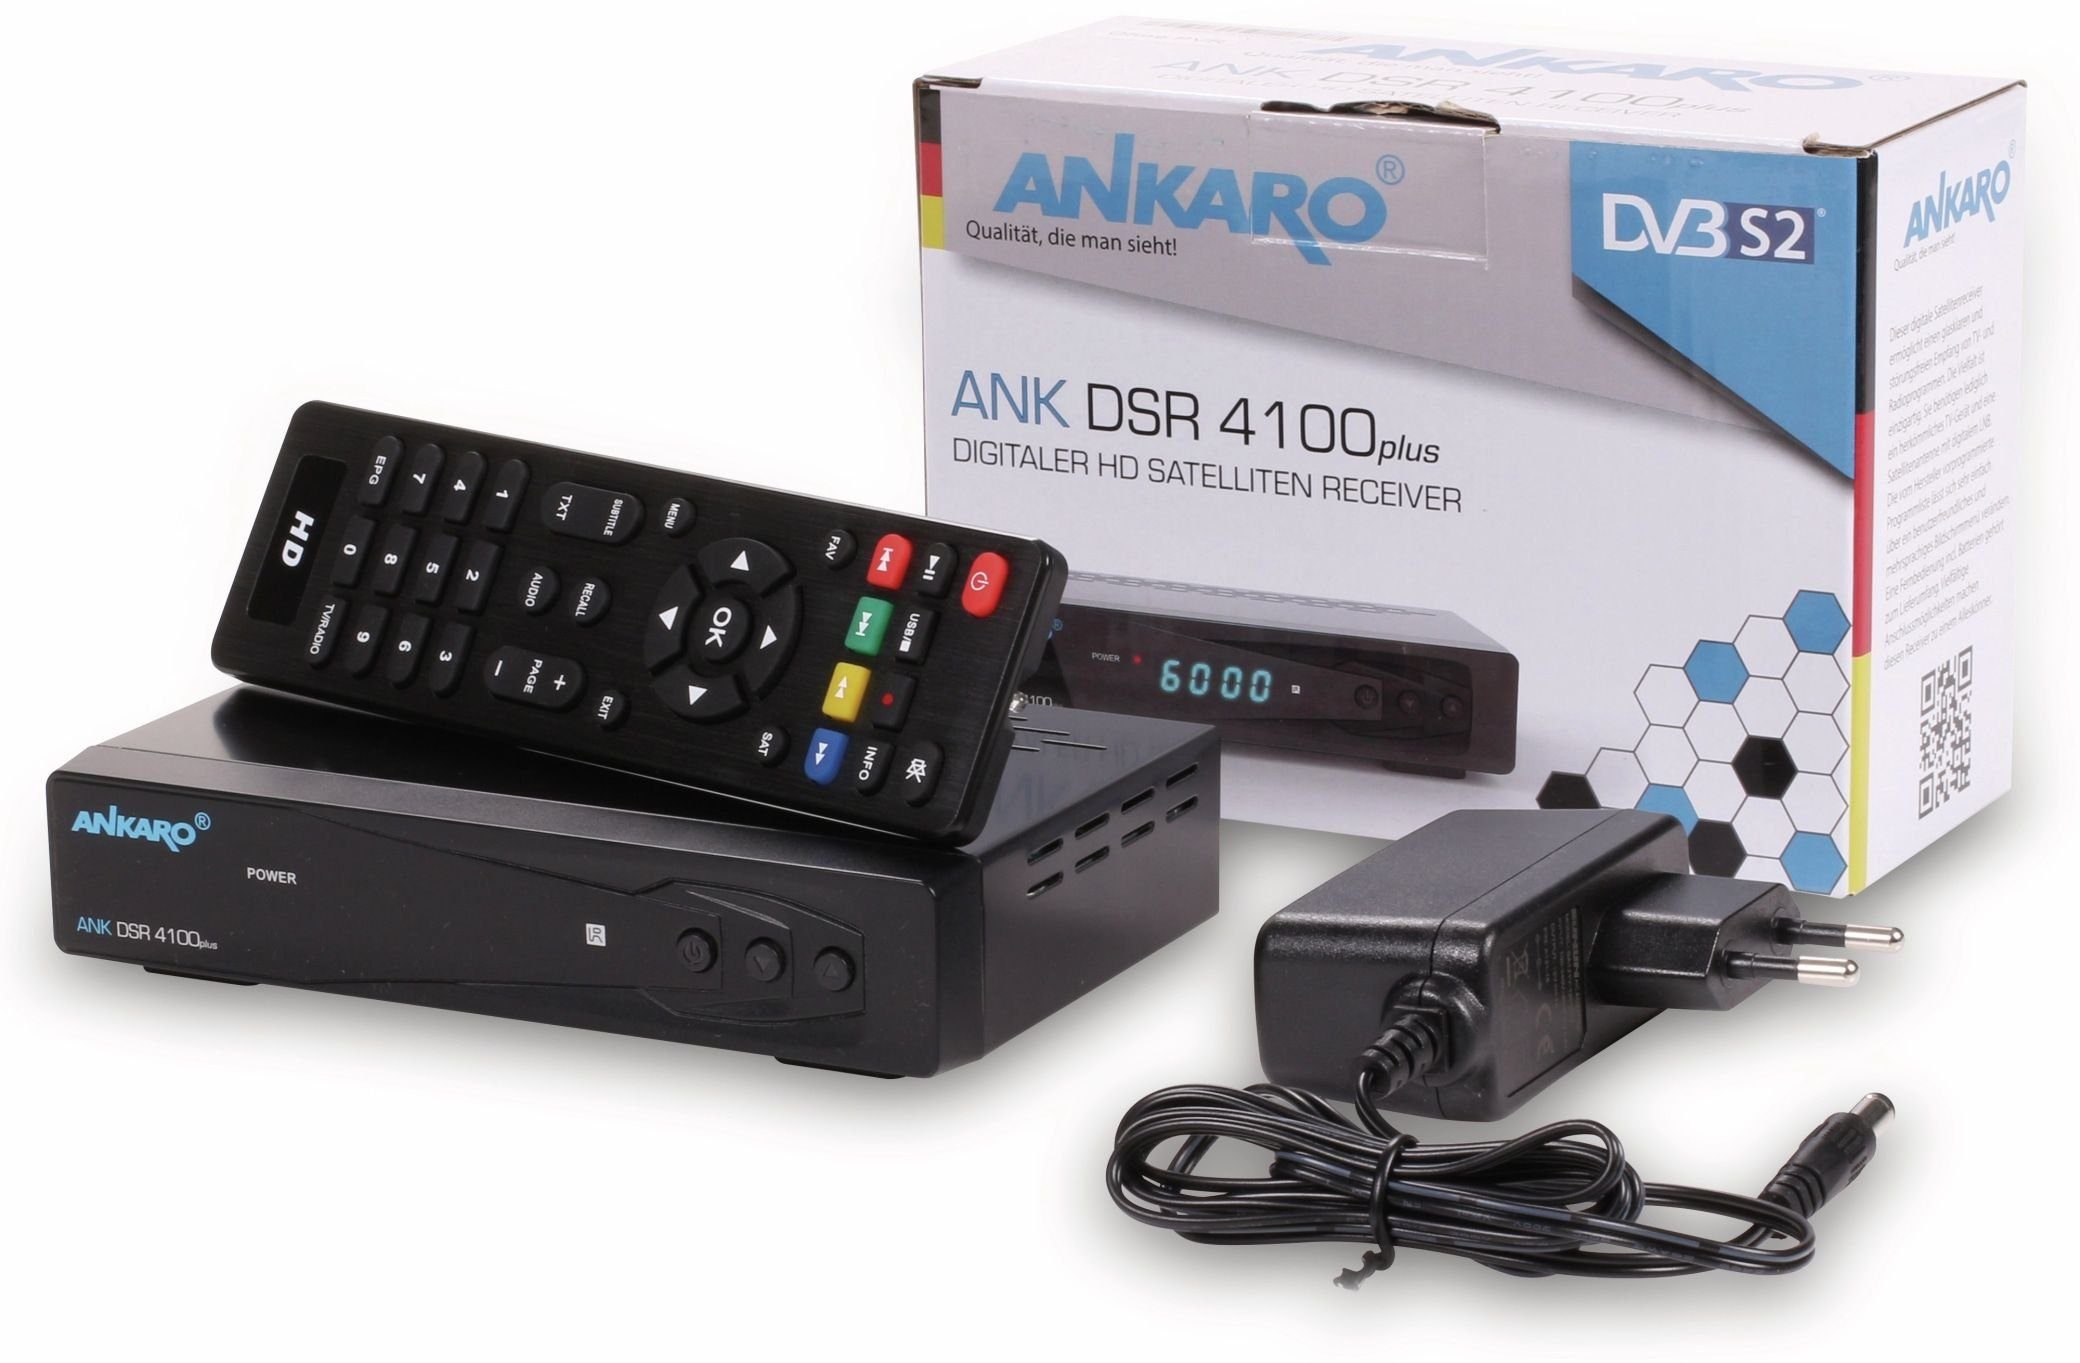 HDTV-Receiver DVB-S Satellitenreceiver 4100plus DSR ANKARO Ankaro